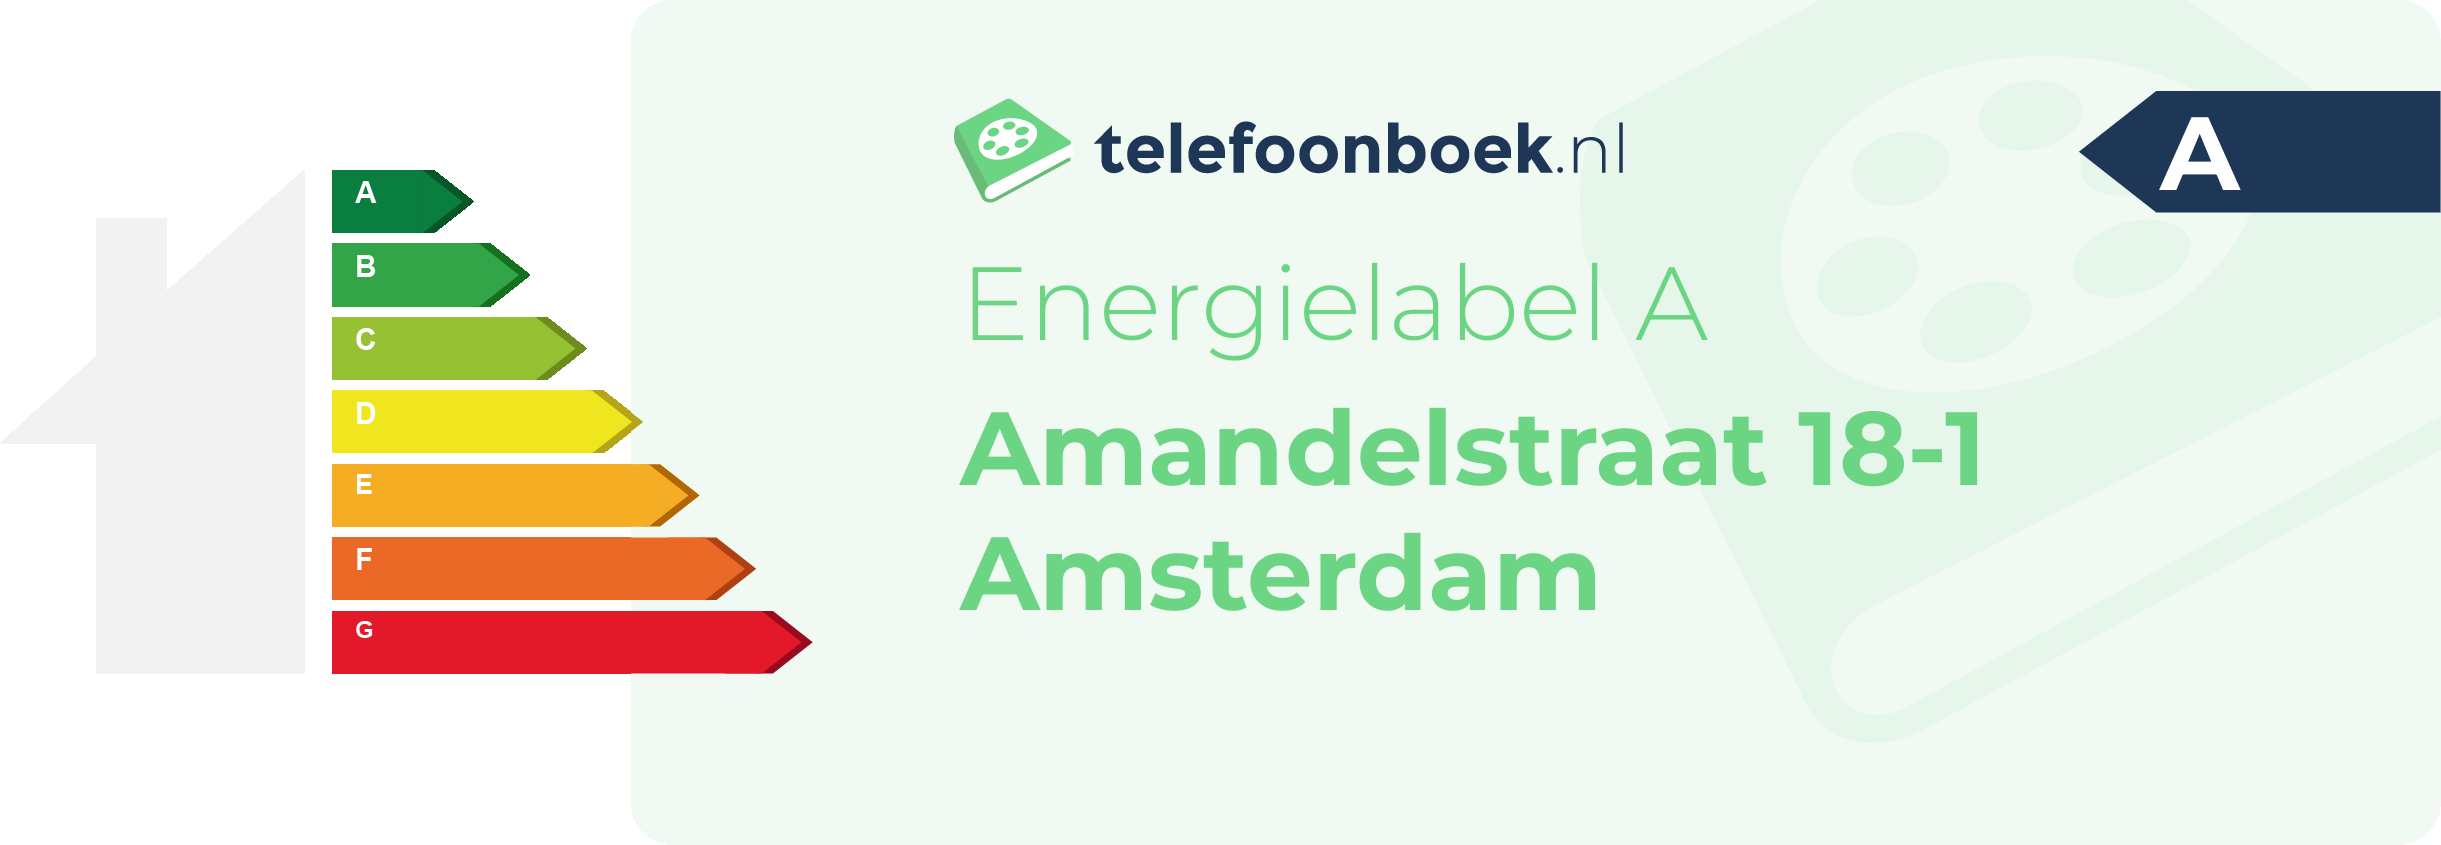 Energielabel Amandelstraat 18-1 Amsterdam